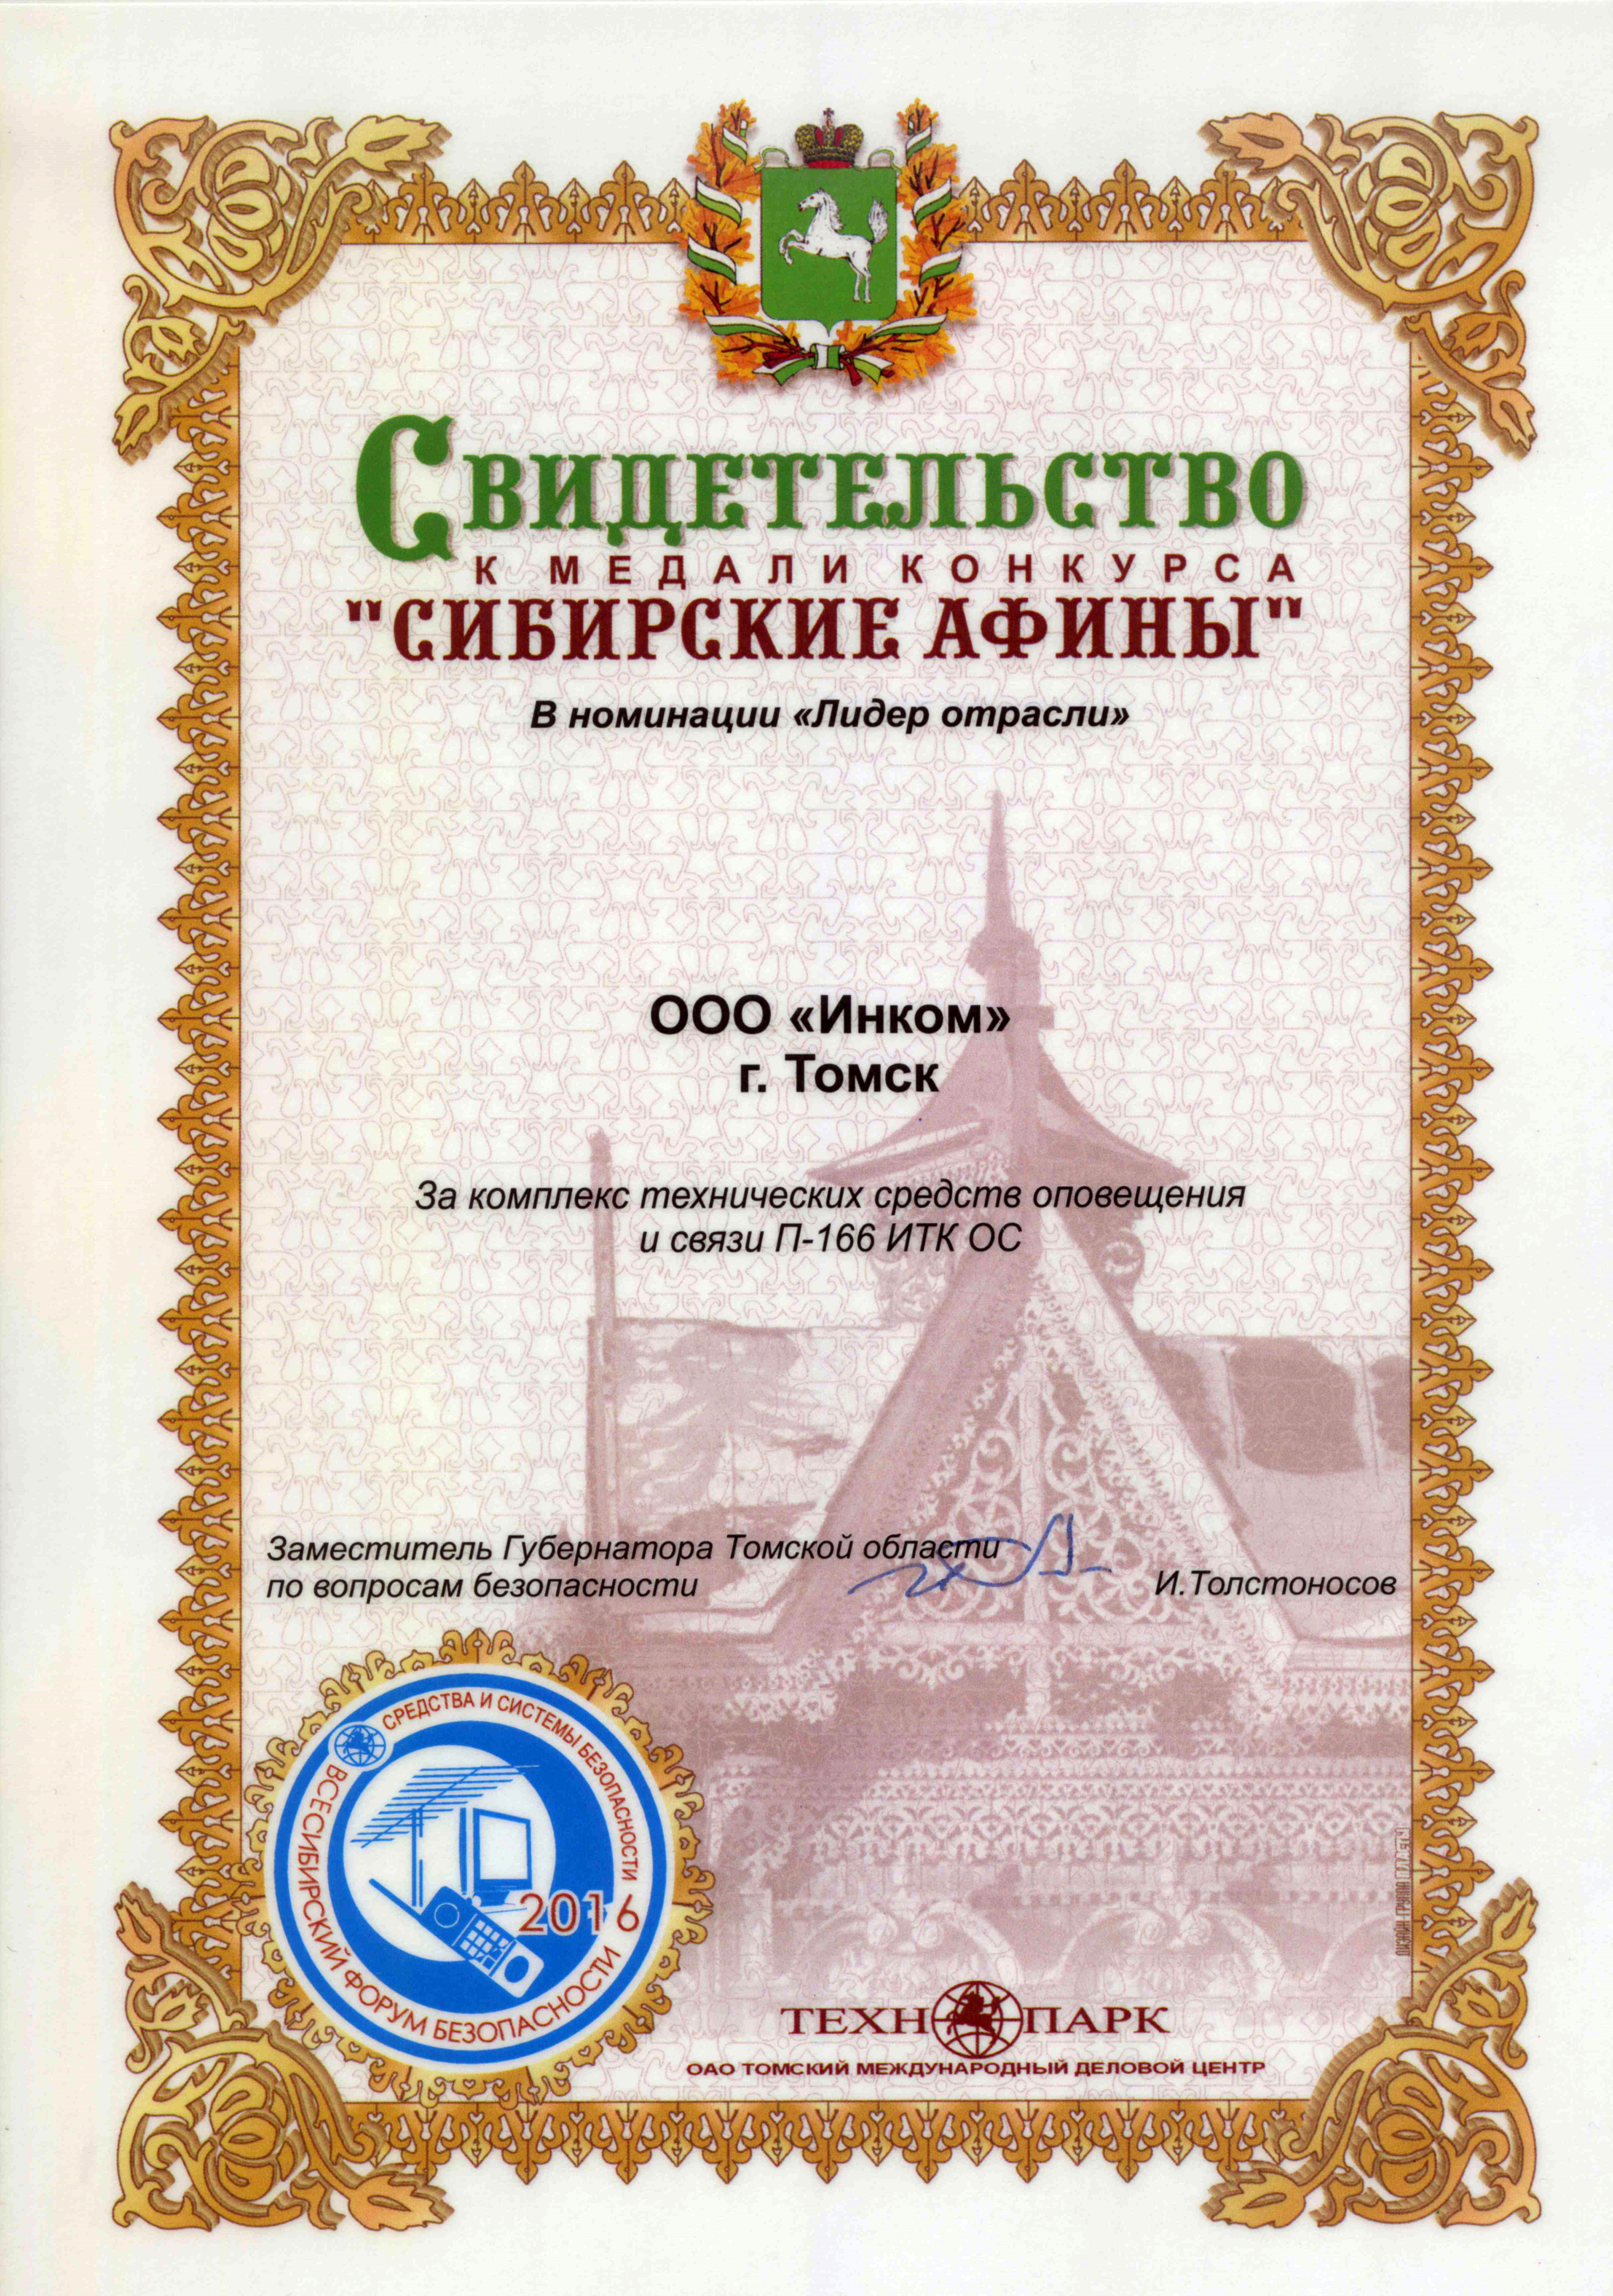 Медаль "Всесибирского форума безопасности" за комплекс технических средств оповещения и связи